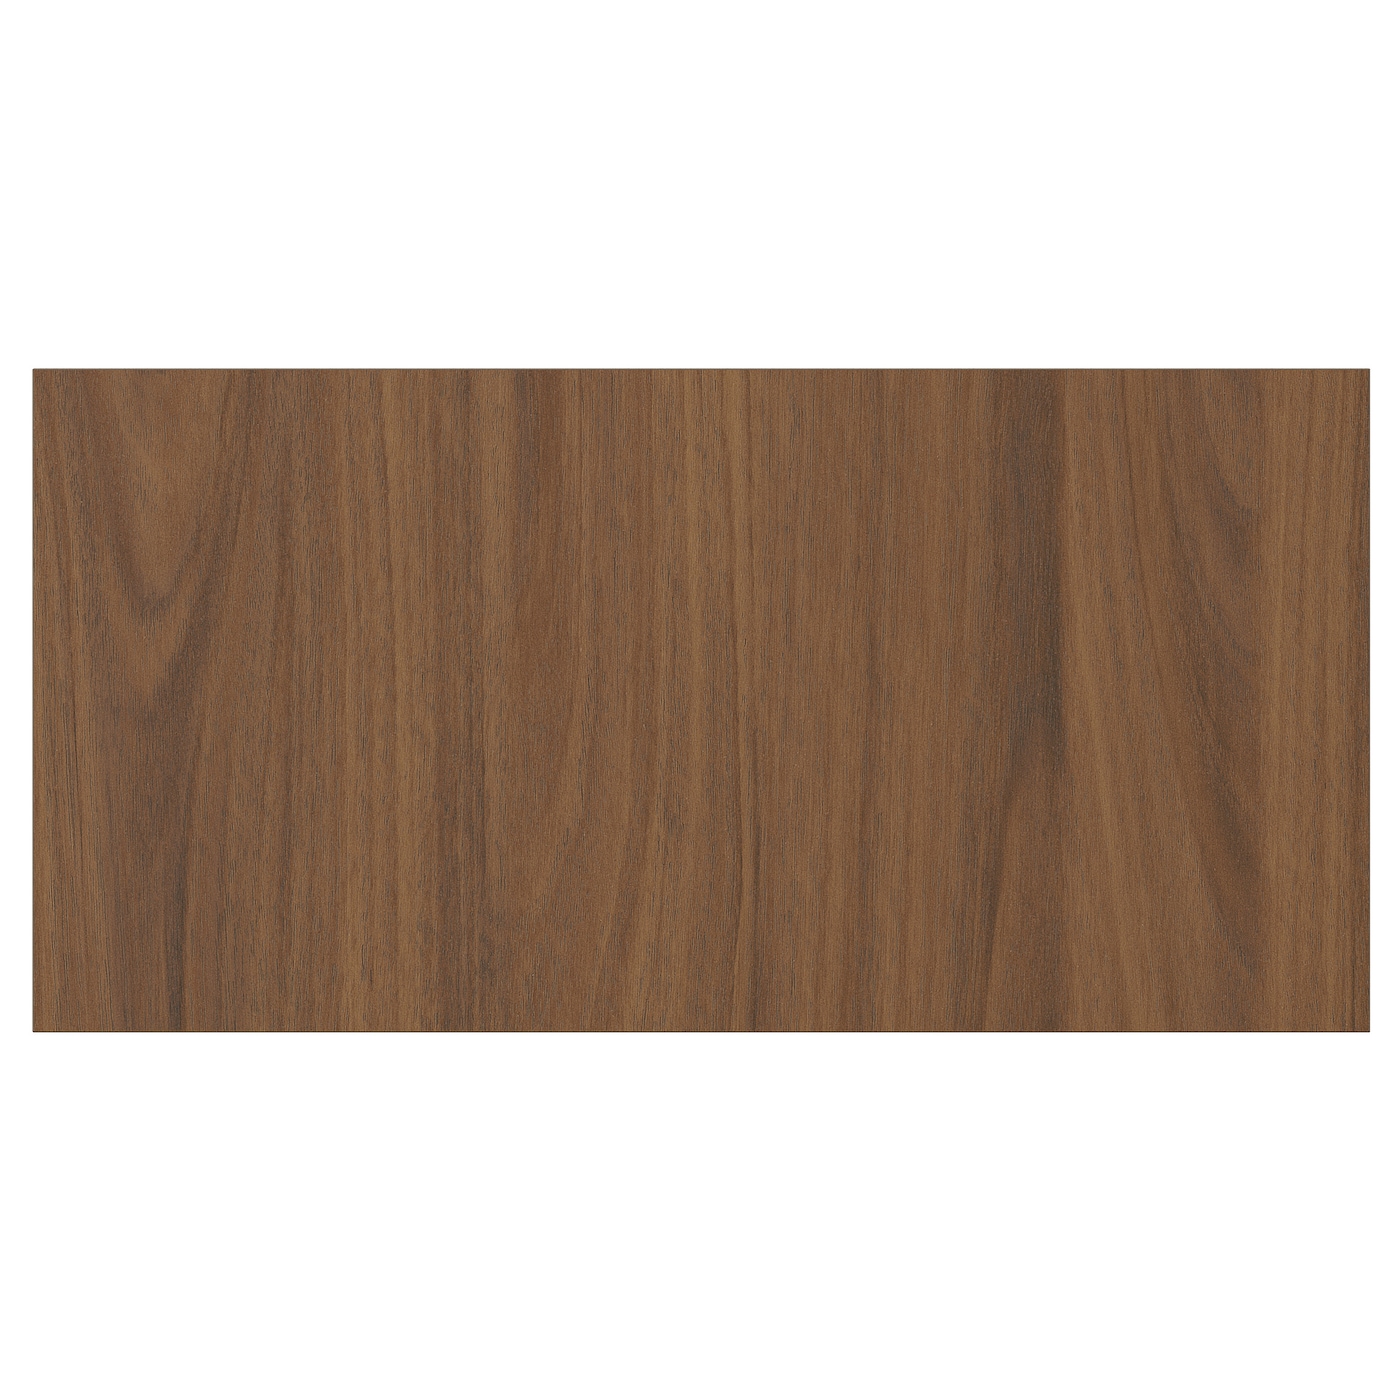 Дверца  - TISTORP IKEA/ ТИСТОРП ИКЕА,  40х20 см, коричневый